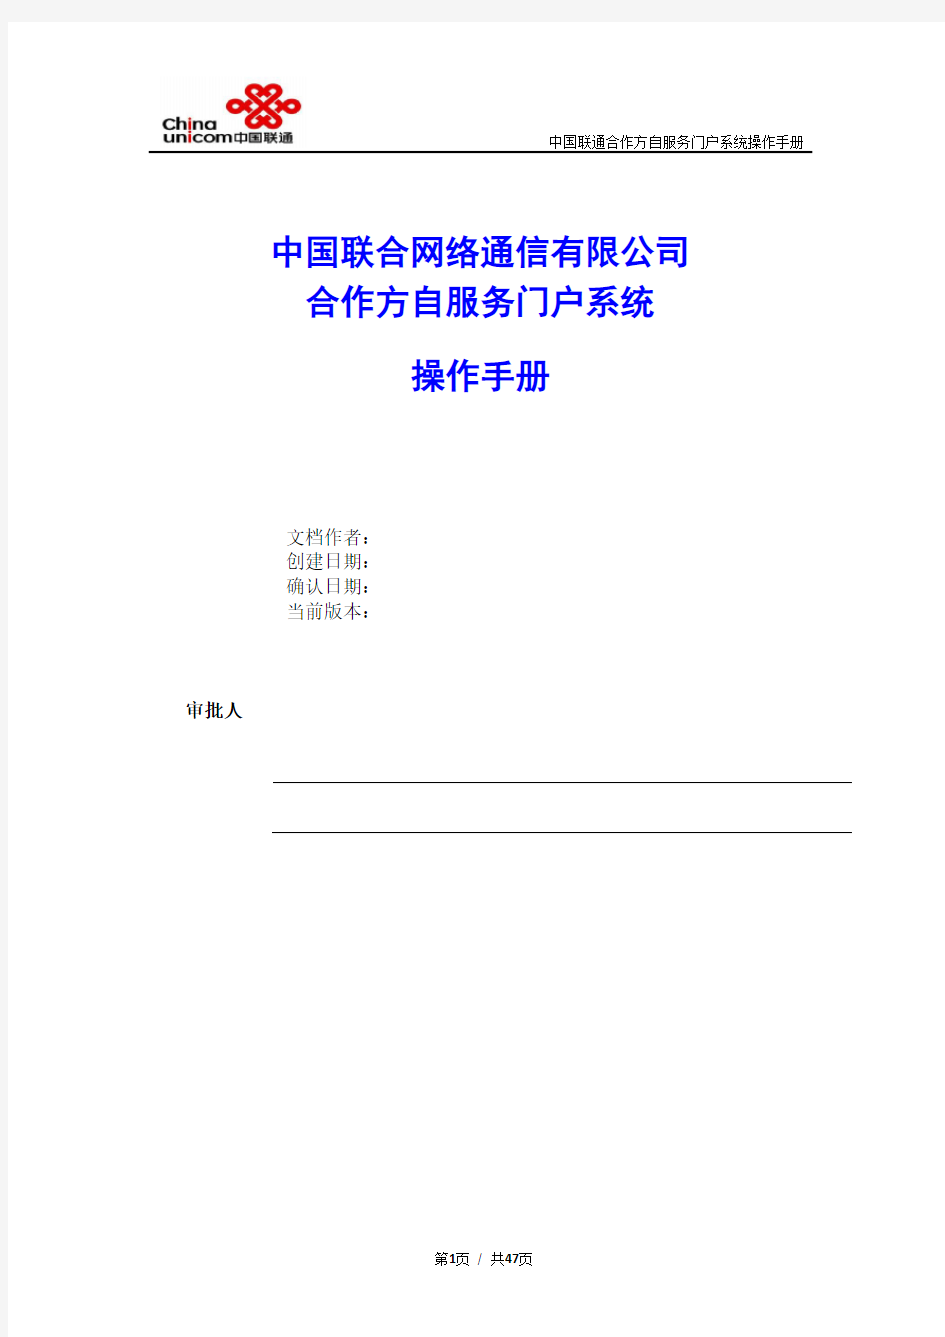 (完整版)中国联通合作方自服务门户系统操作手册-合作方人员操作V_1.0